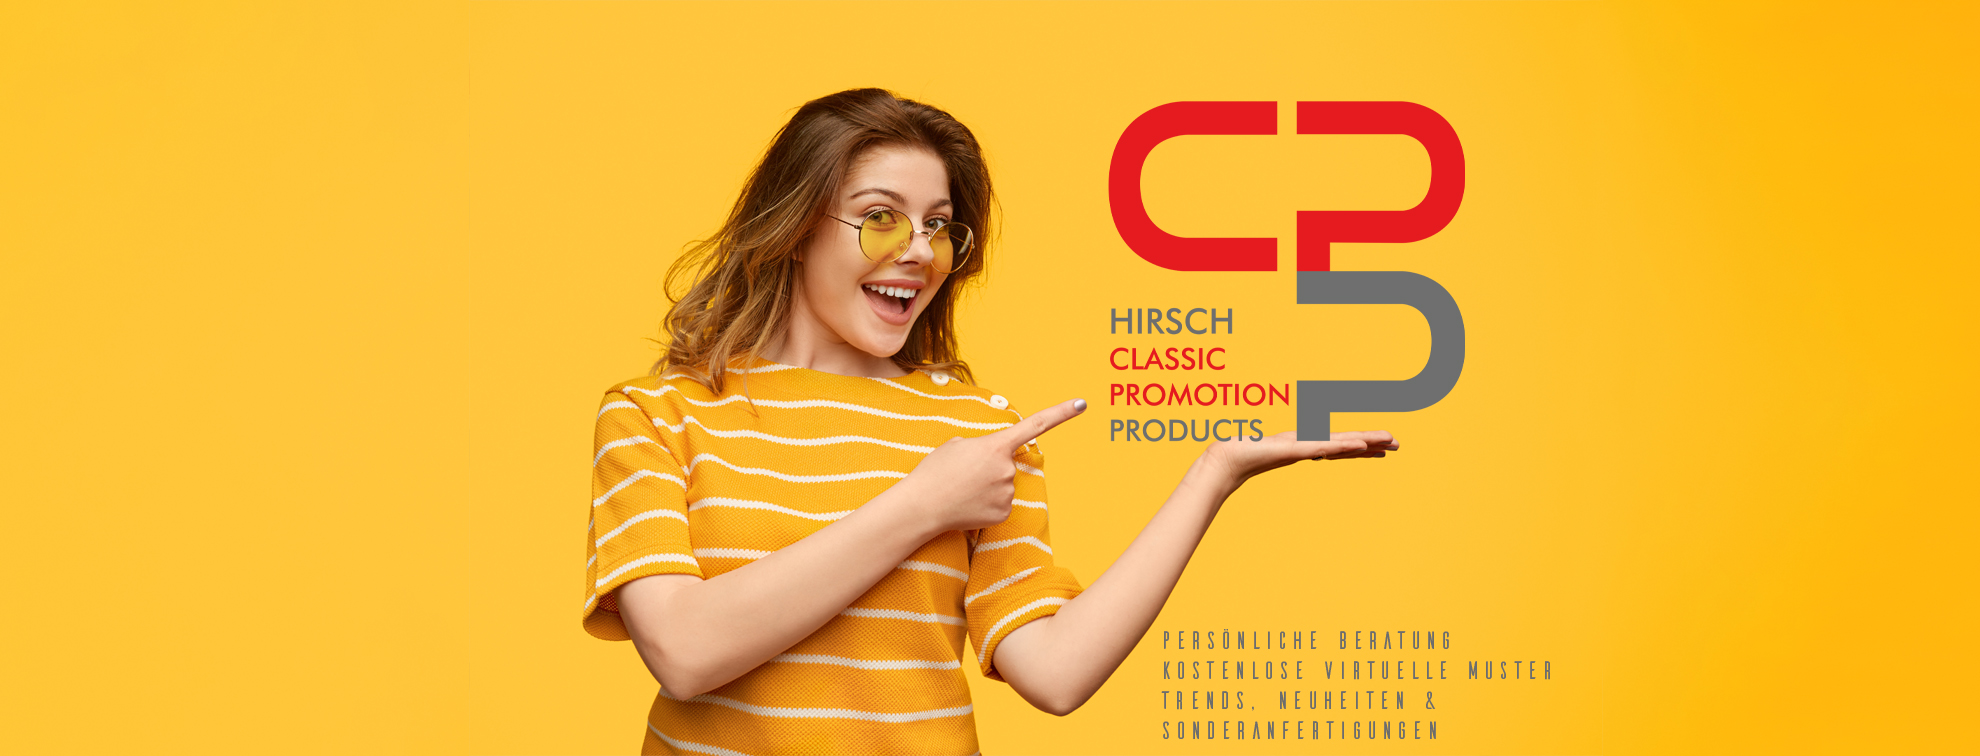 Hirsch Classic-Promotion Cover Desktop